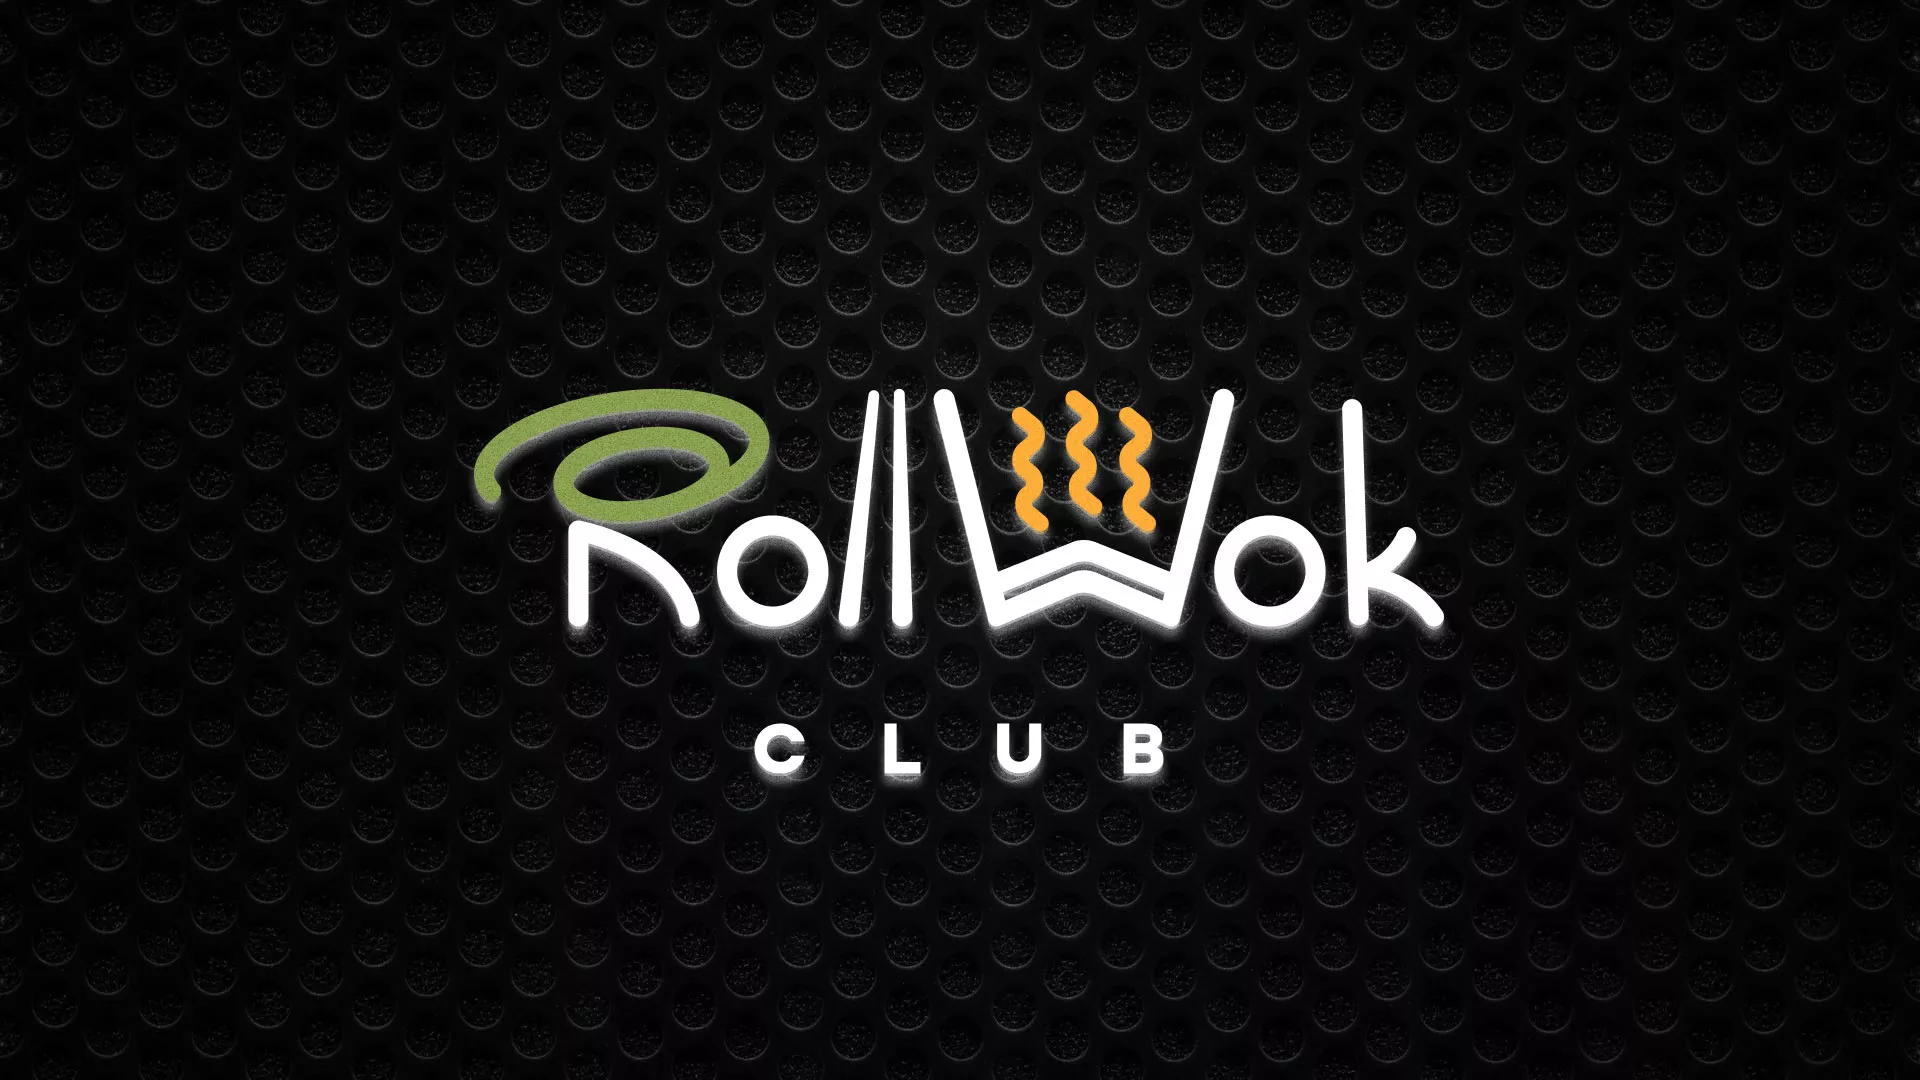 Брендирование торговых точек суши-бара «Roll Wok Club» в Краснокаменске